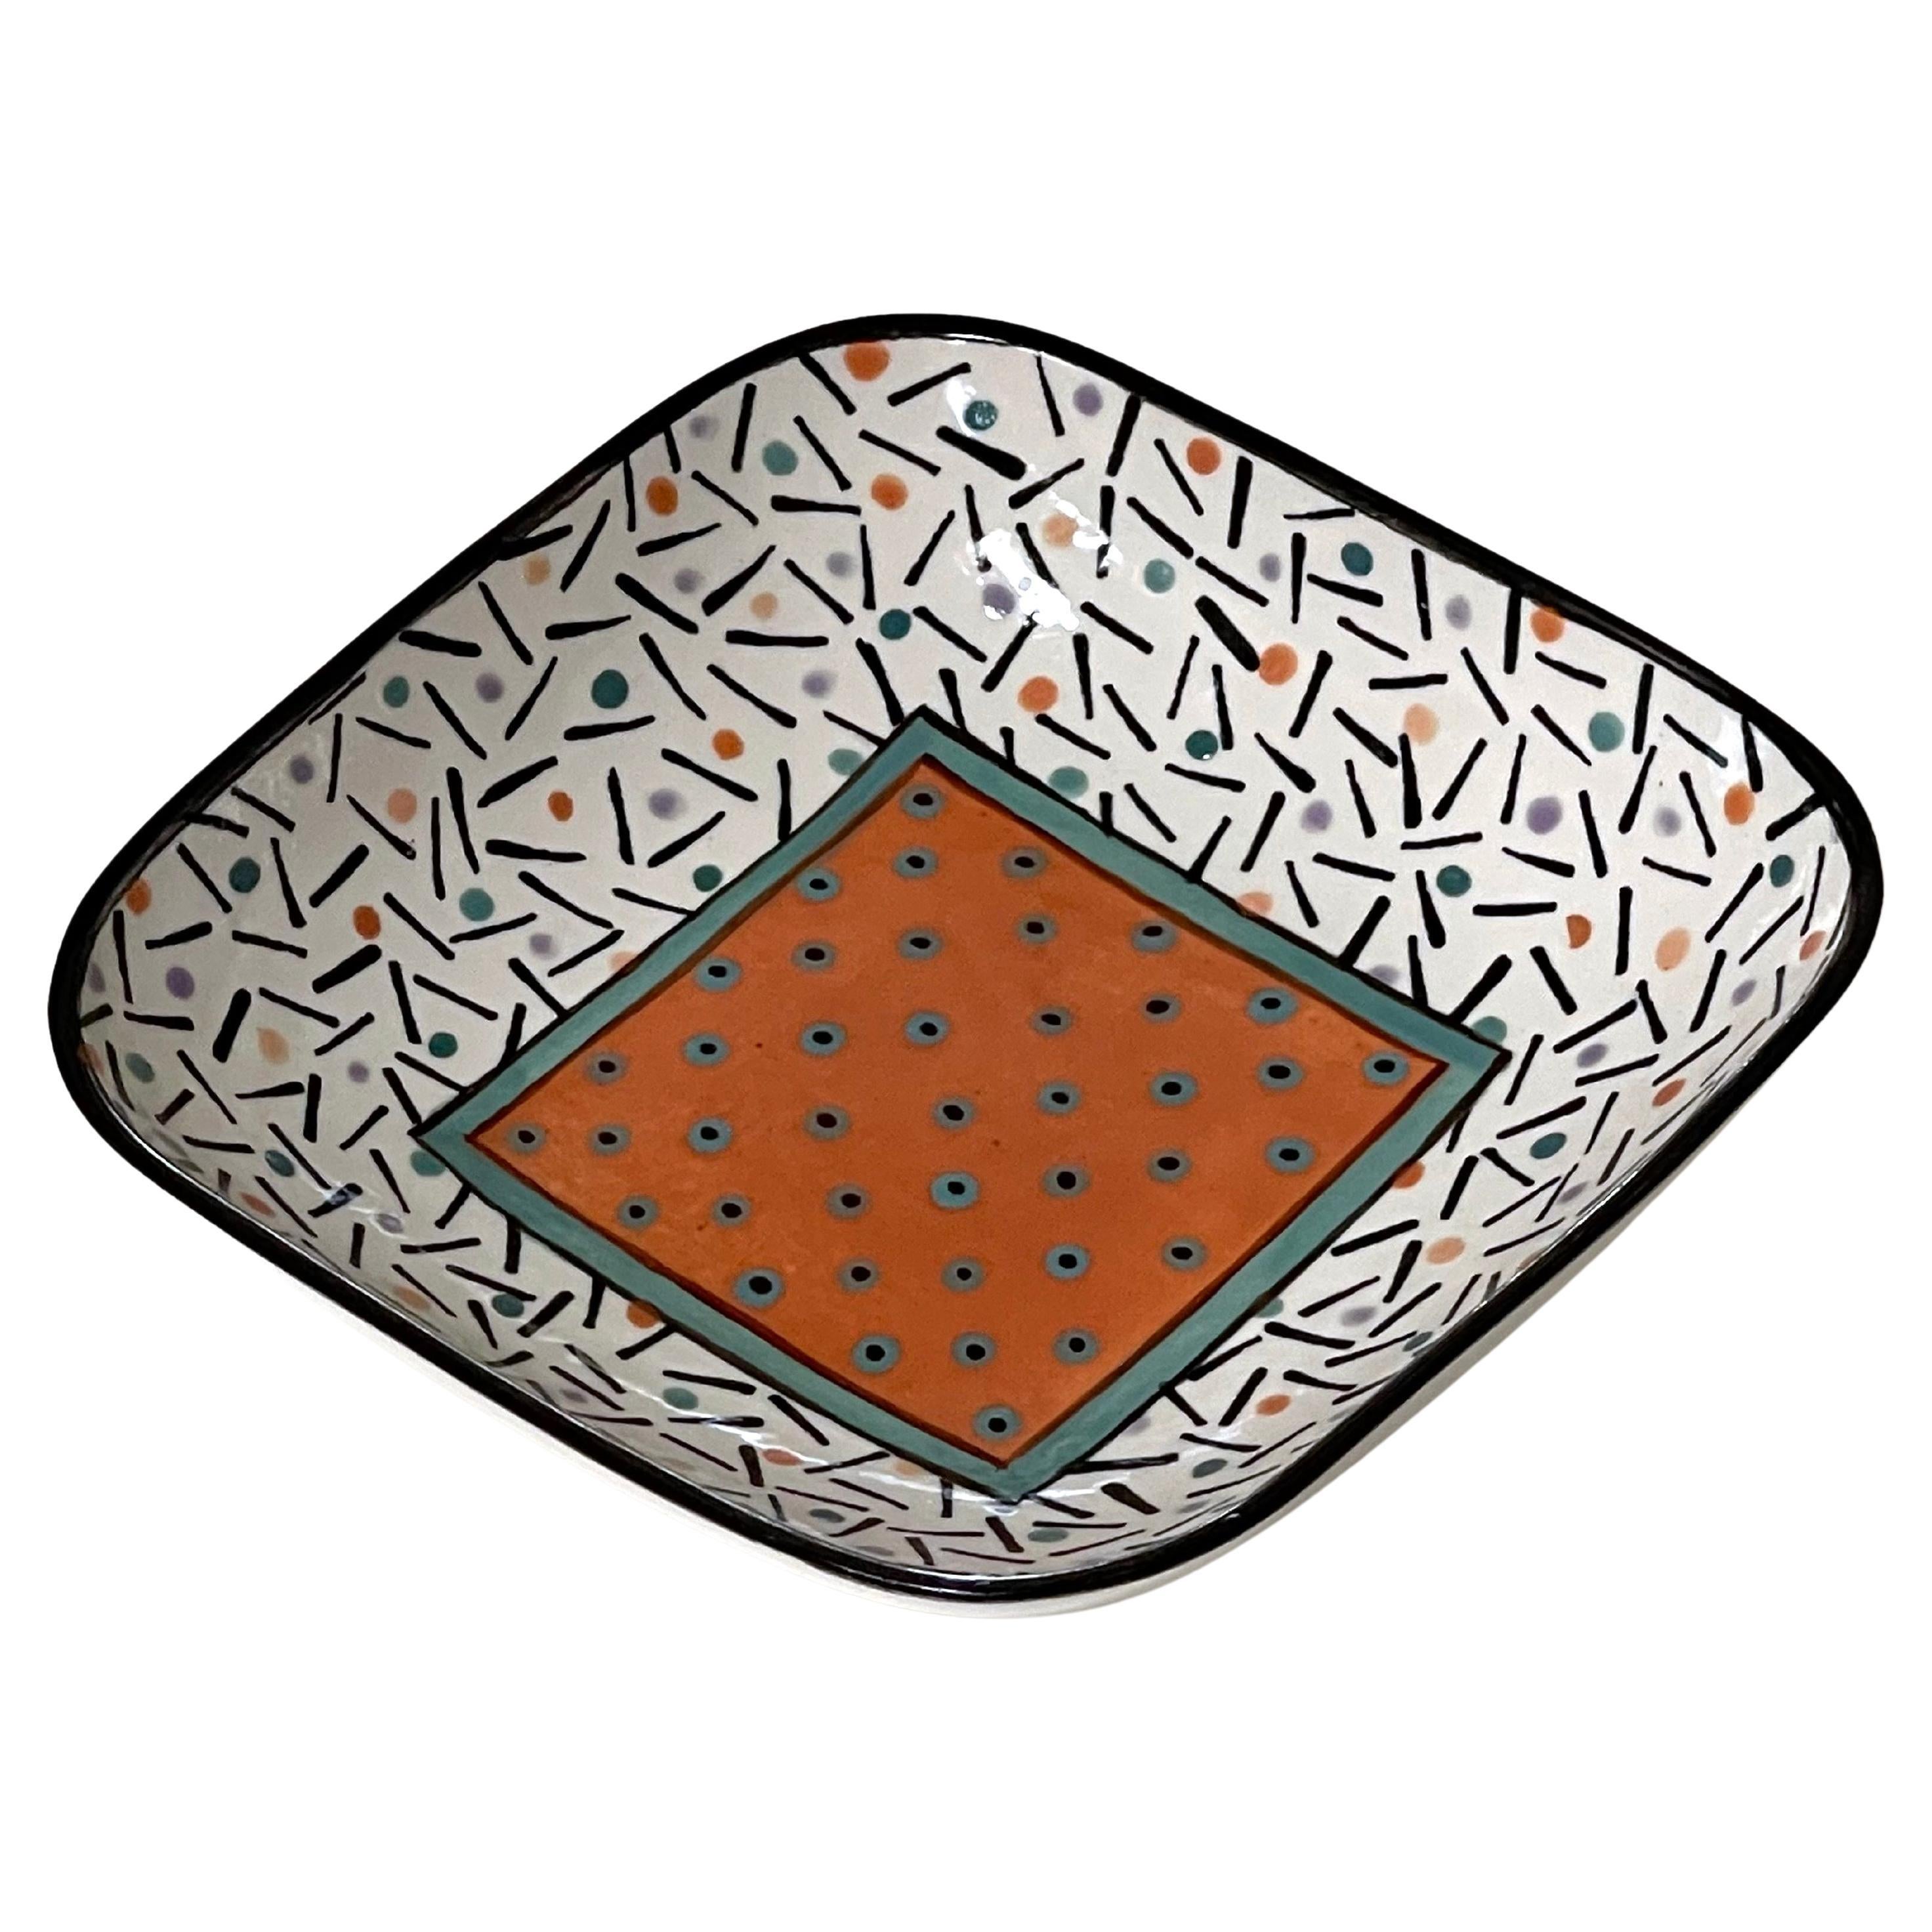 Dorothy Hafner Post Modern Art Pottery Bowl For Sale